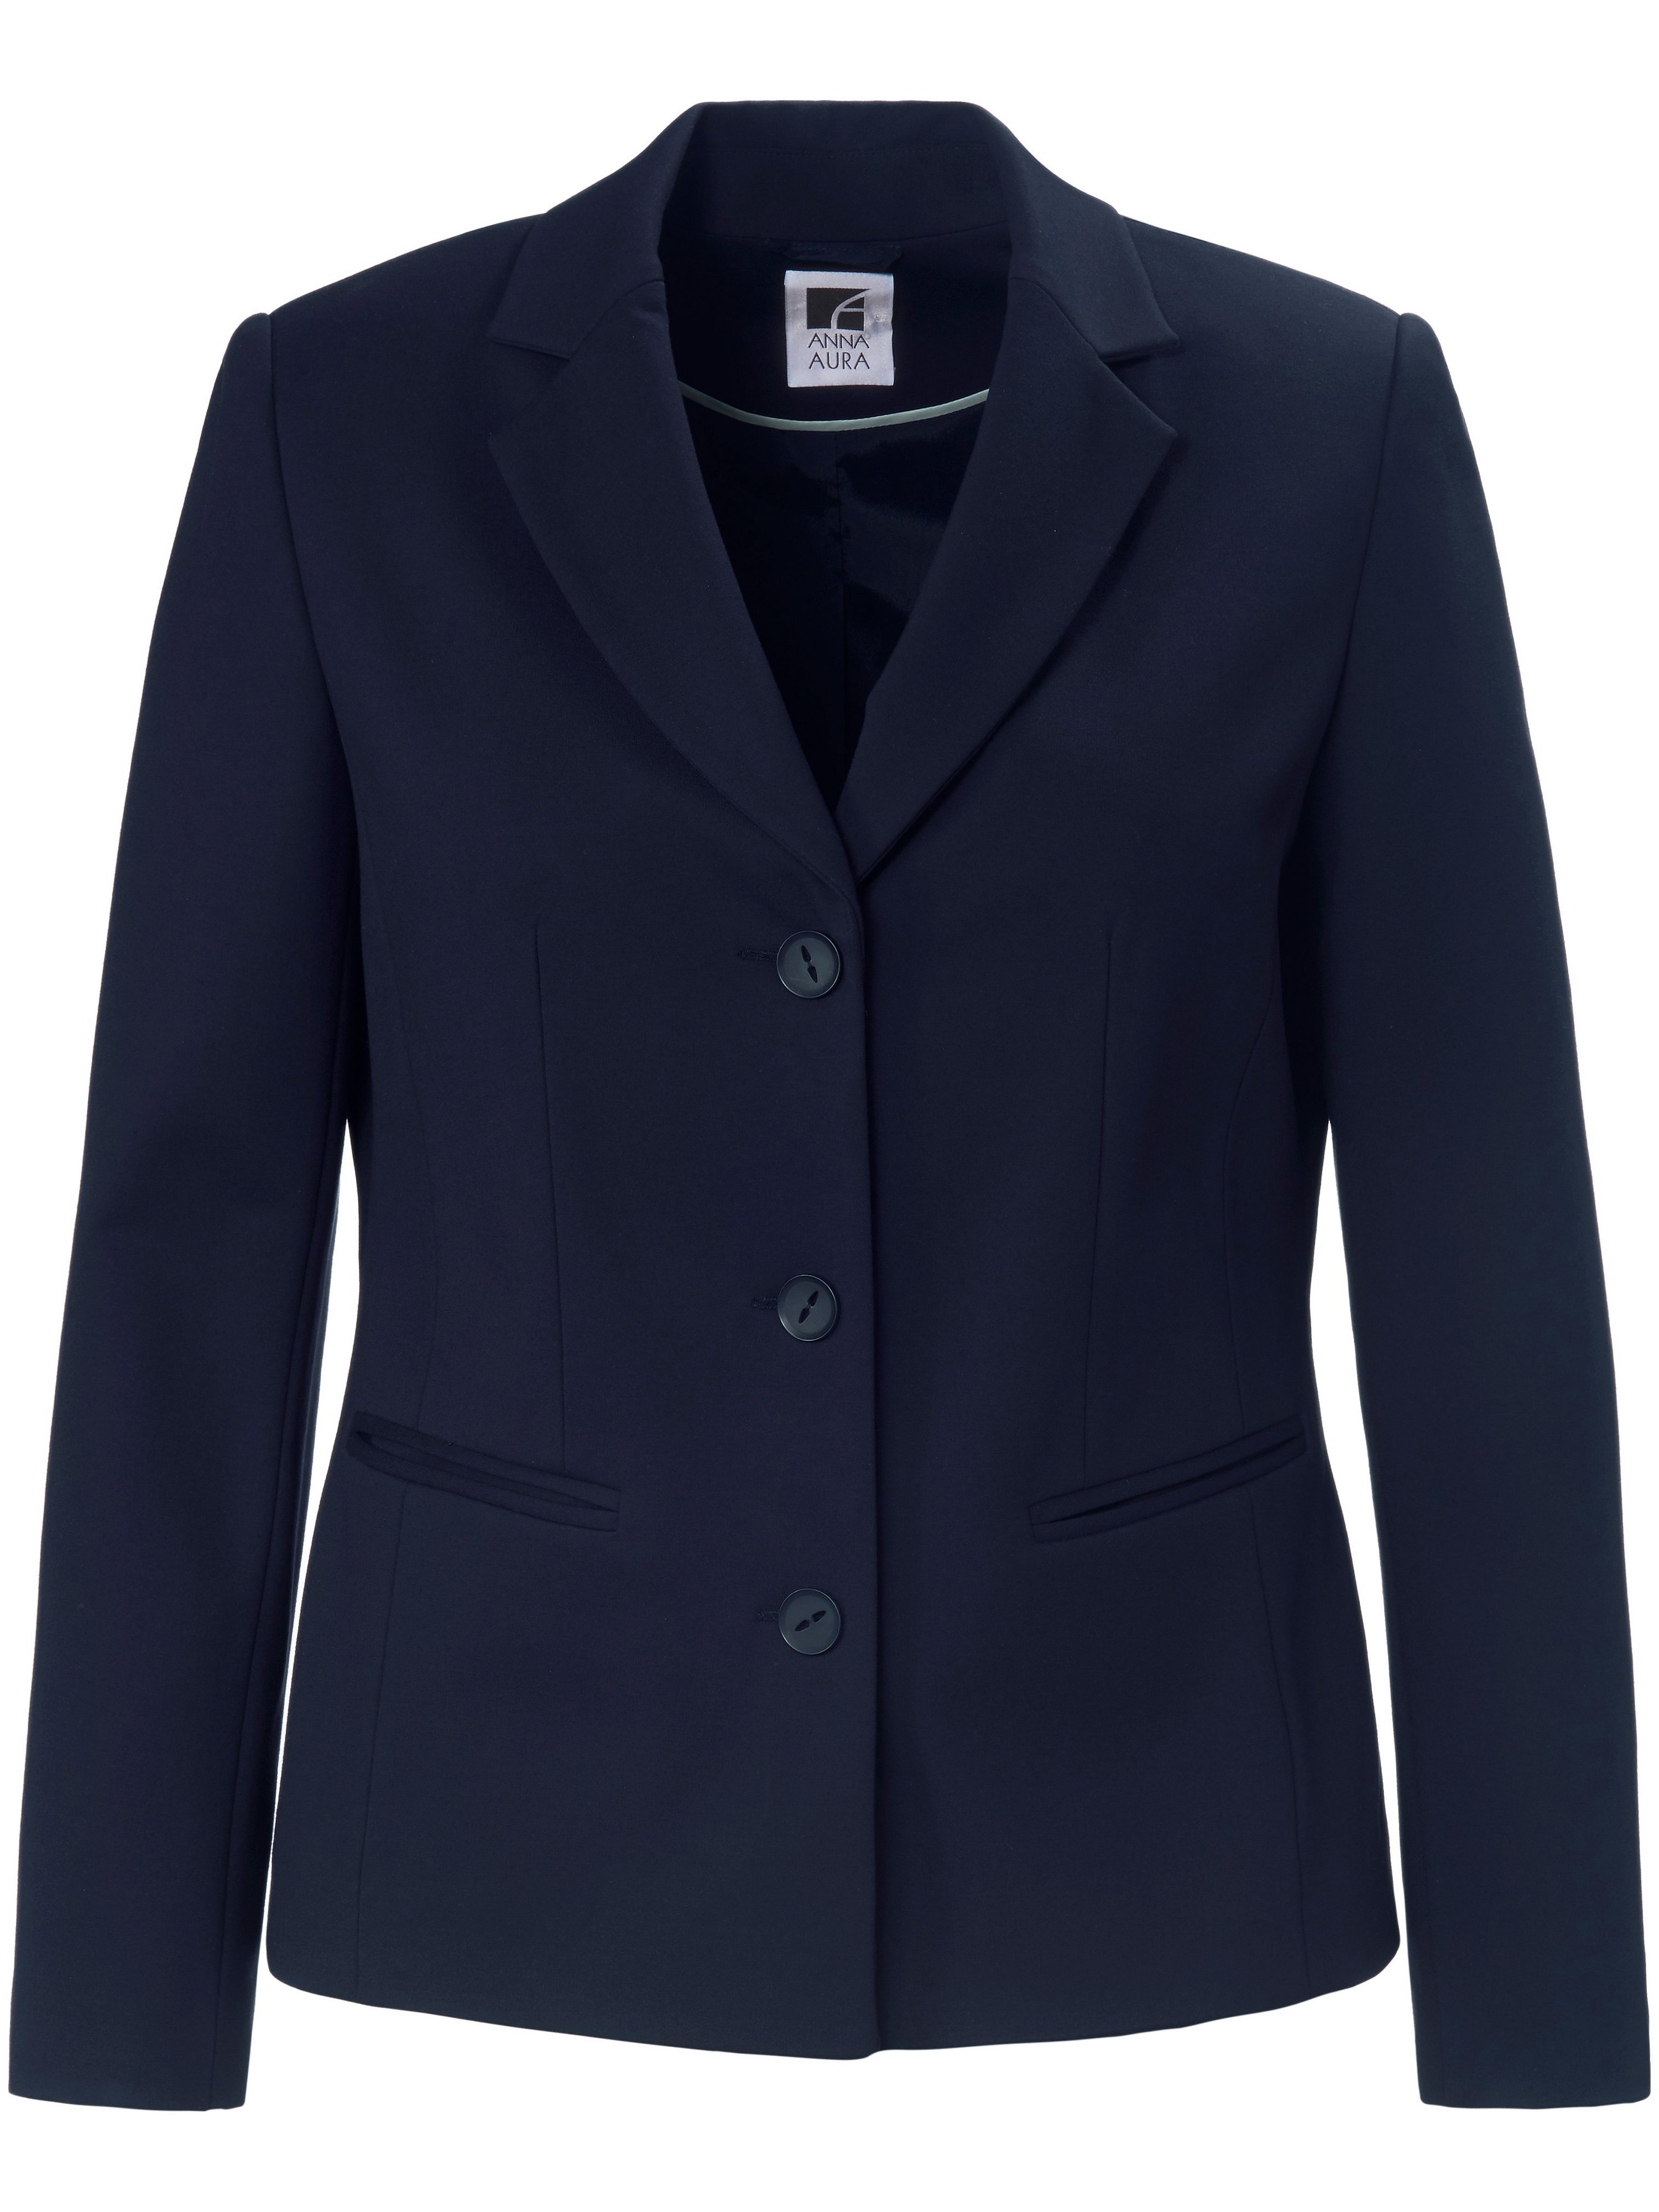 Le blazer long jersey noble extensible  Anna Aura bleu taille 48